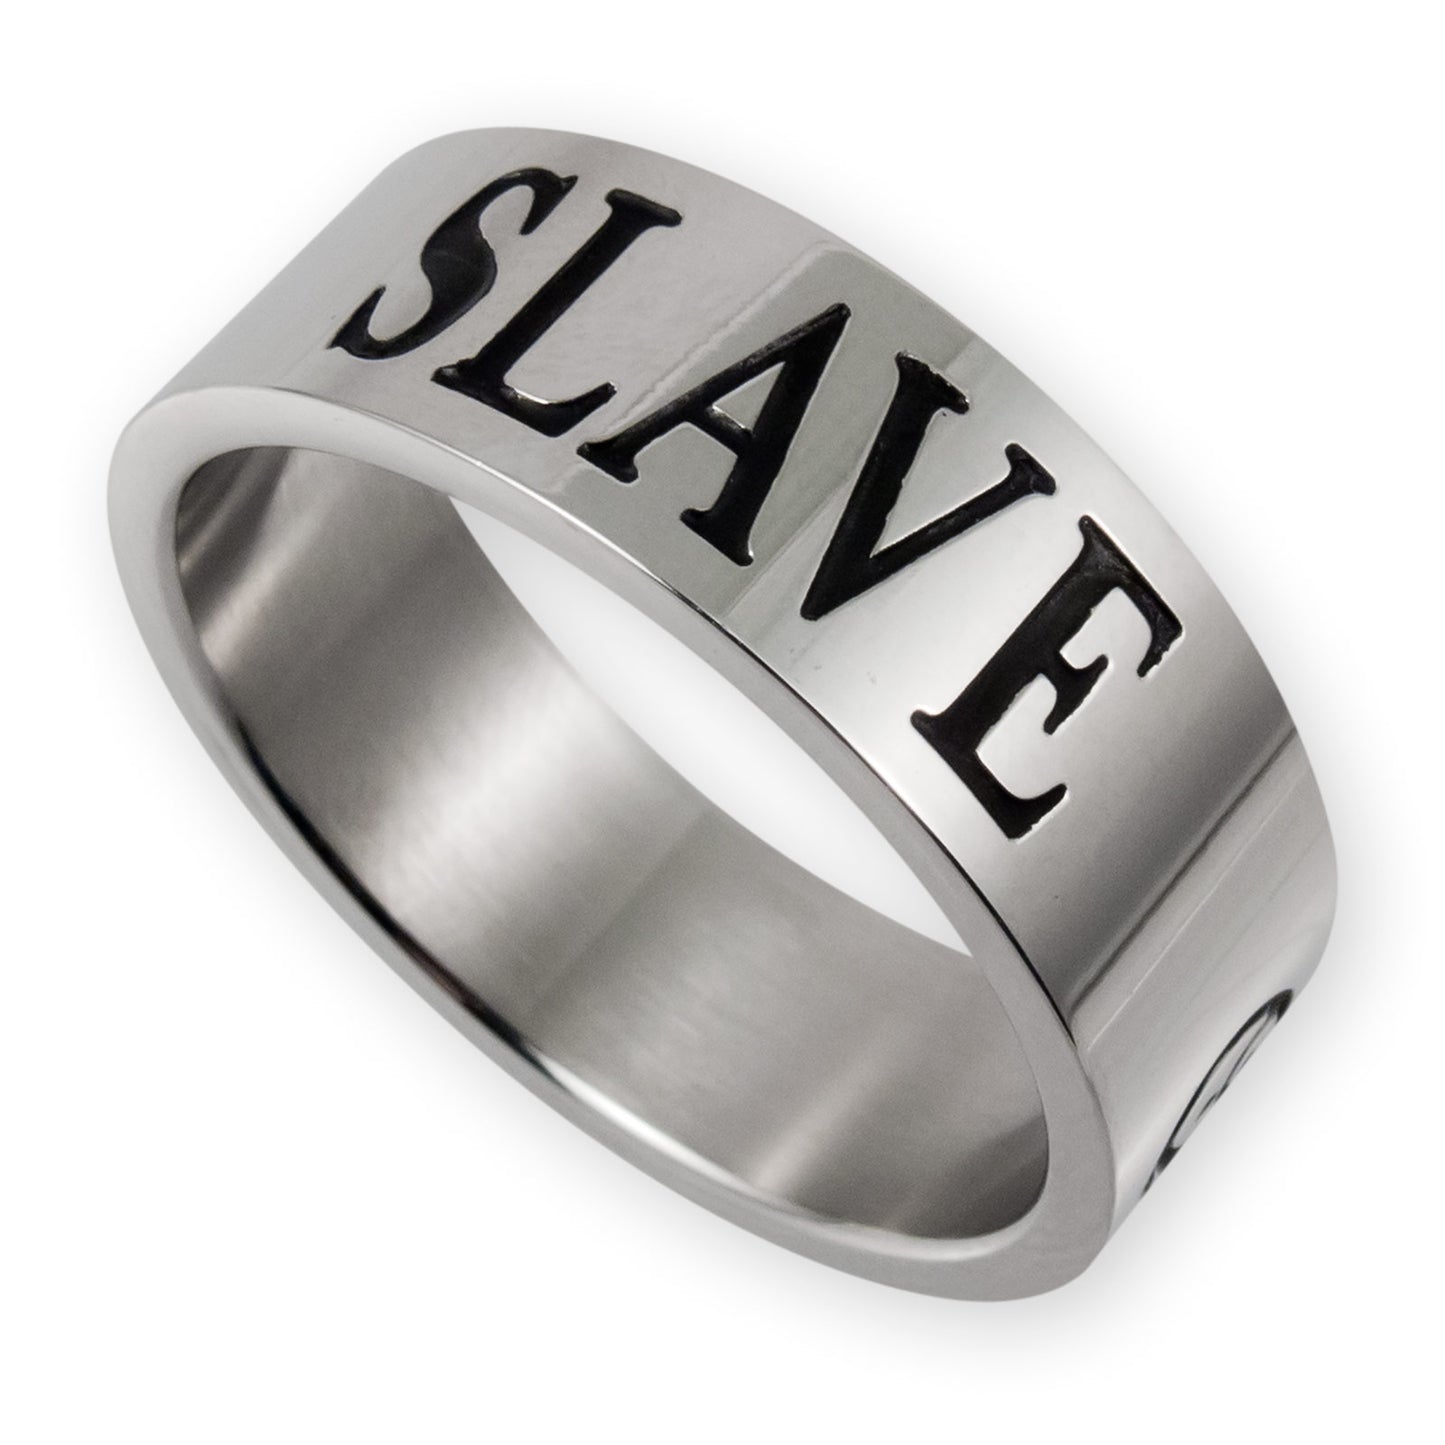 RVS ring met SLAVE (verschillende maten)